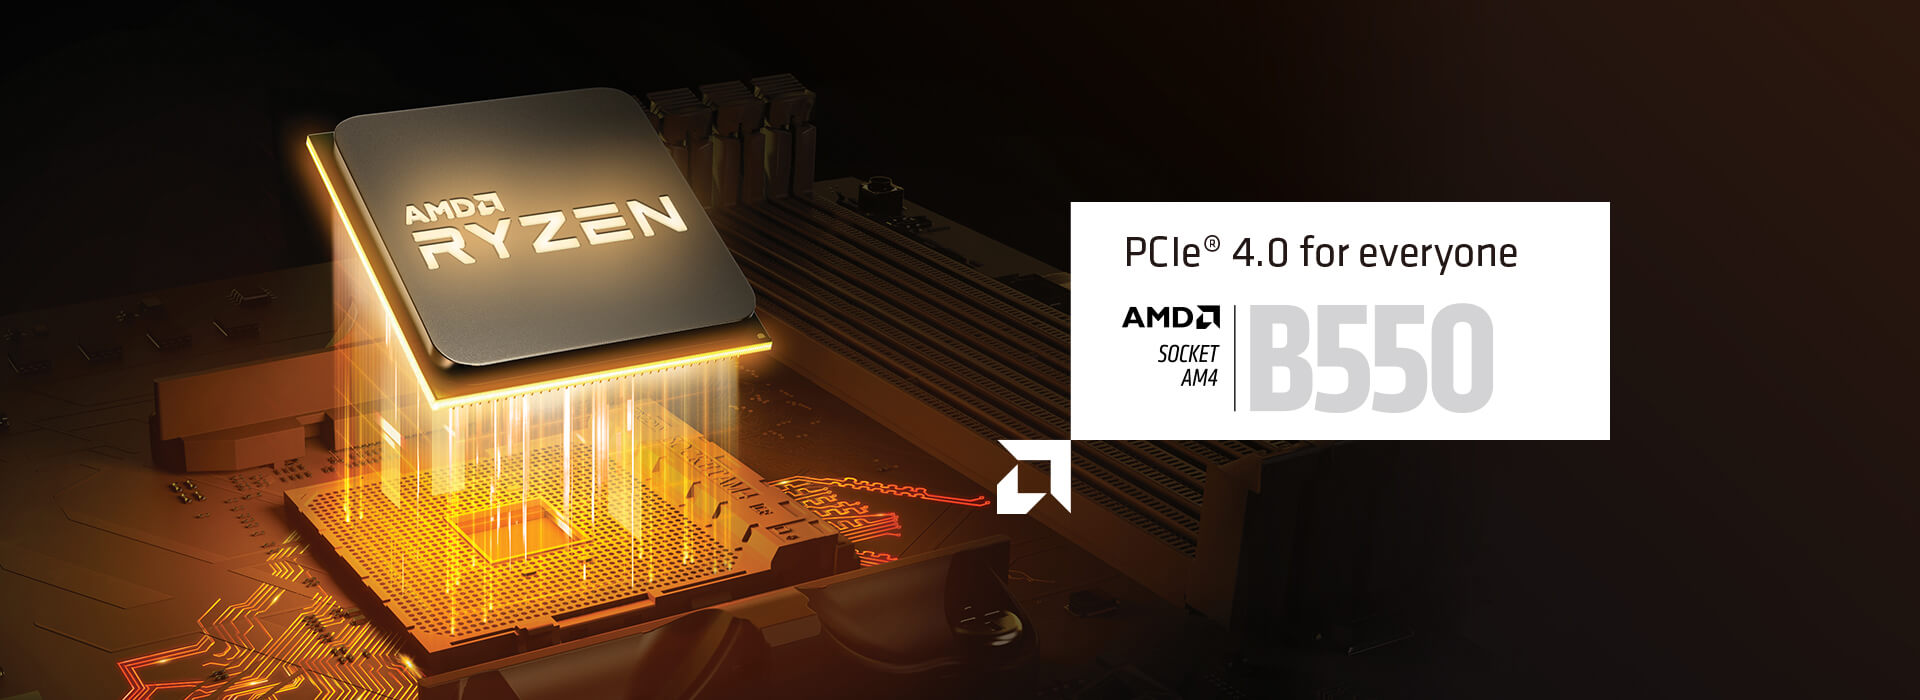 PCIe 4.0 voor iedereen. AMD SOCKET AM4 B550. 3e GEN. AMD RYZEN DESKTOP GEREED. Niet compatibel met AMD Ryzen 5 3400G & AMD Ryzen 3 3200G.